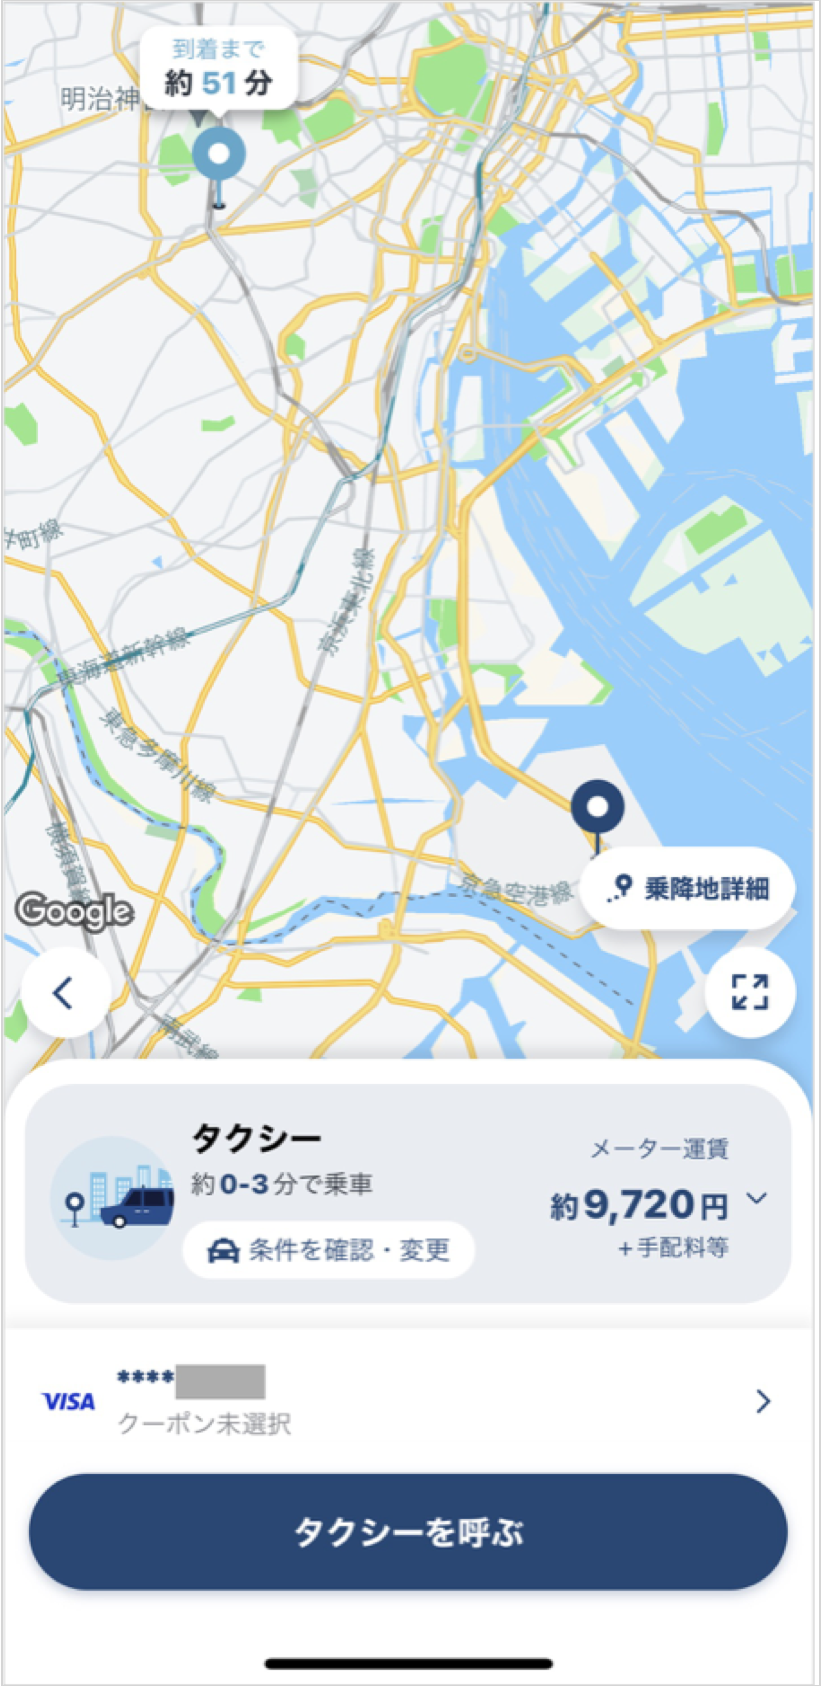 羽田空港から渋谷までのタクシー料金・所要時間まとめ